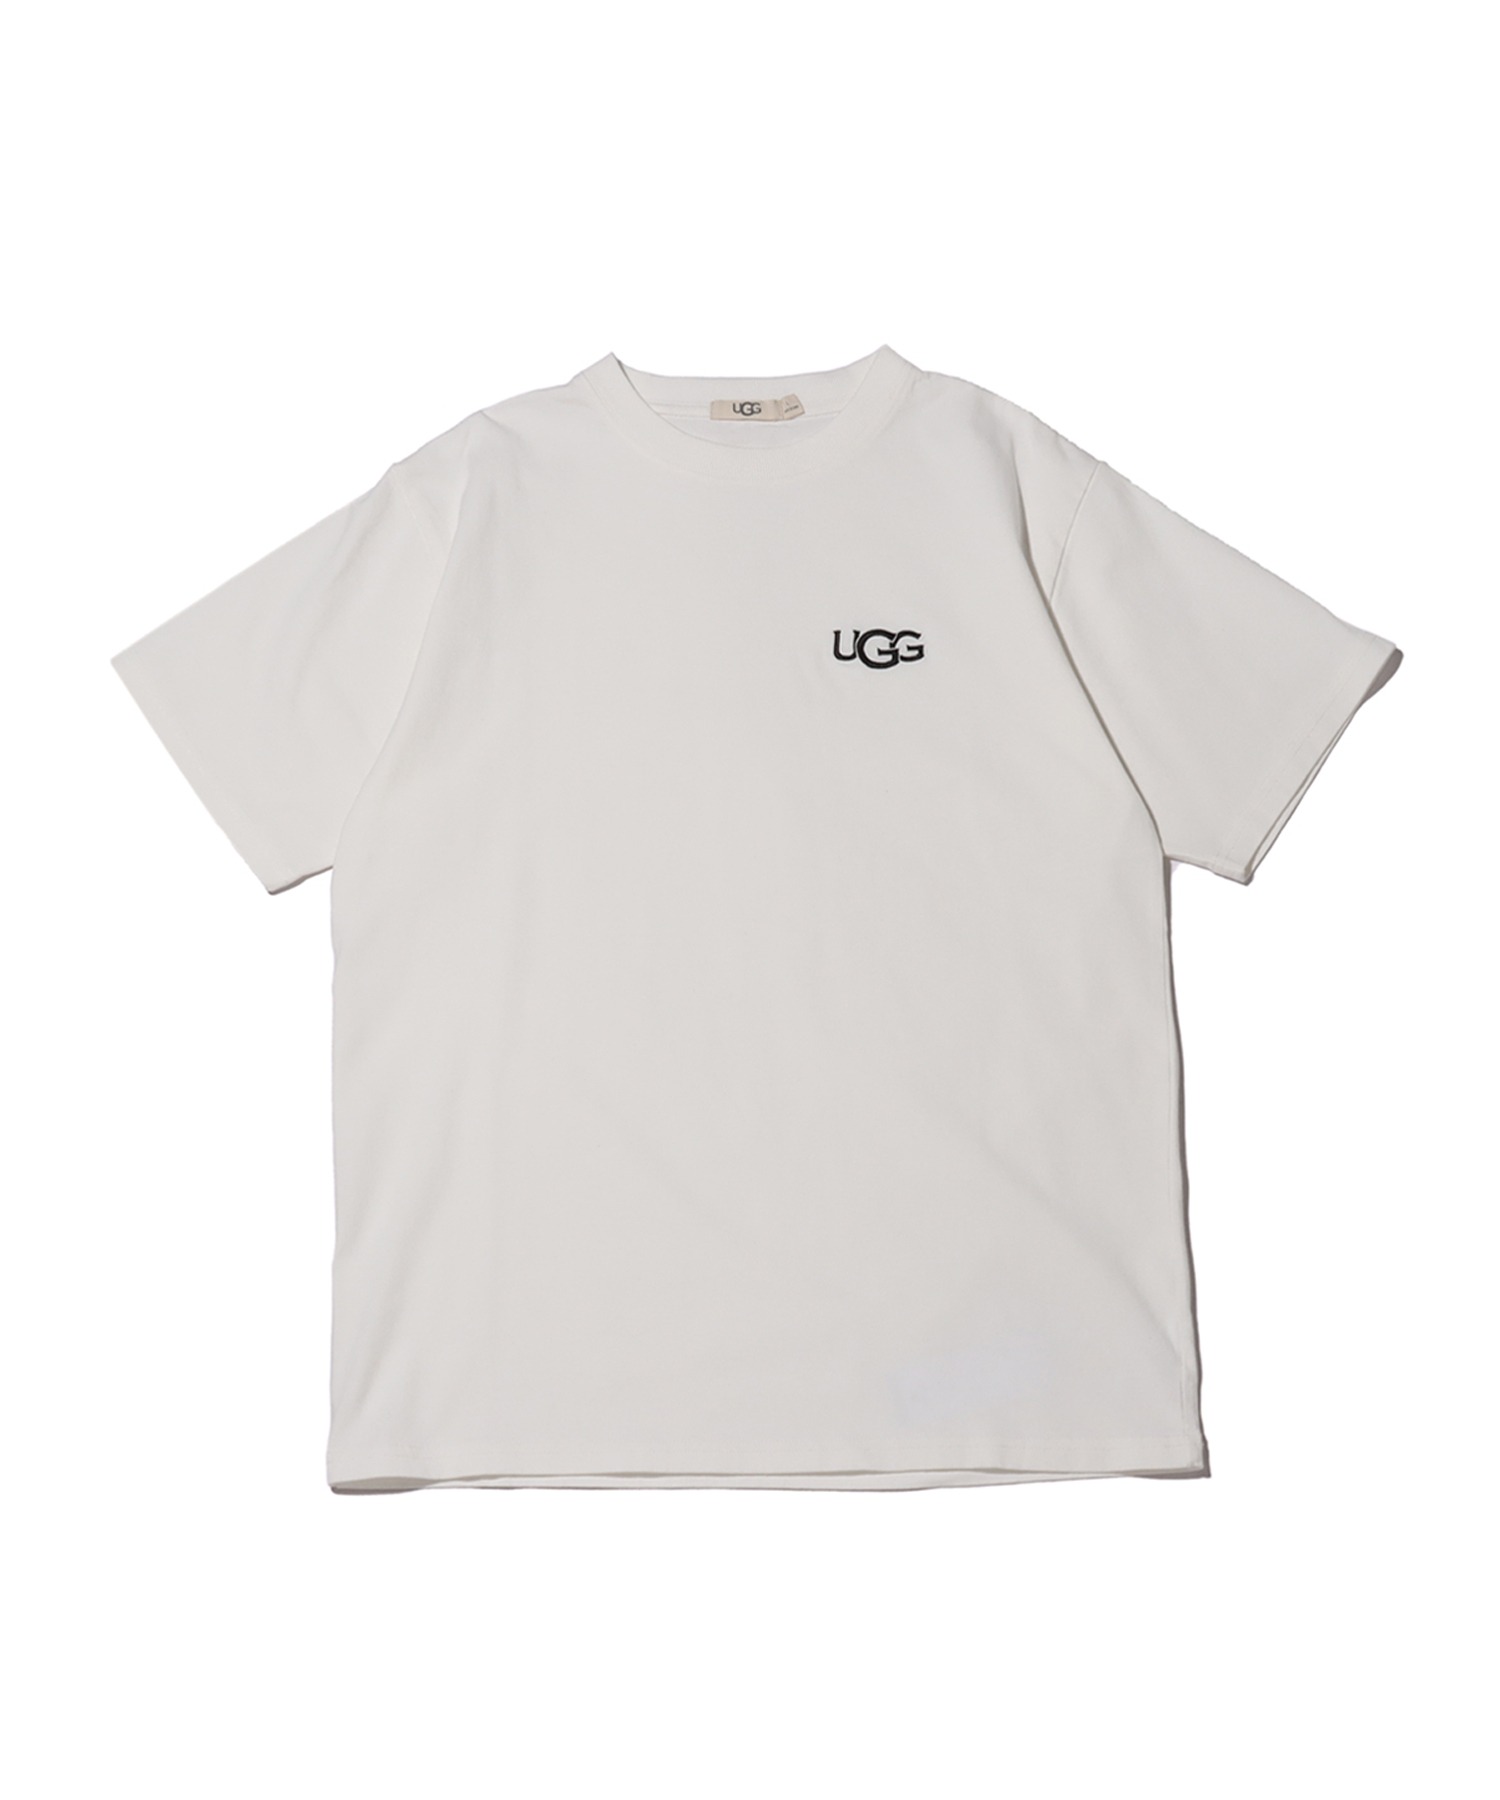 UGGUGG ロゴ刺繍 期間限定お試し価格 Tシャツ ティーシャツ ロゴシシュウ アグ 日本人気超絶の